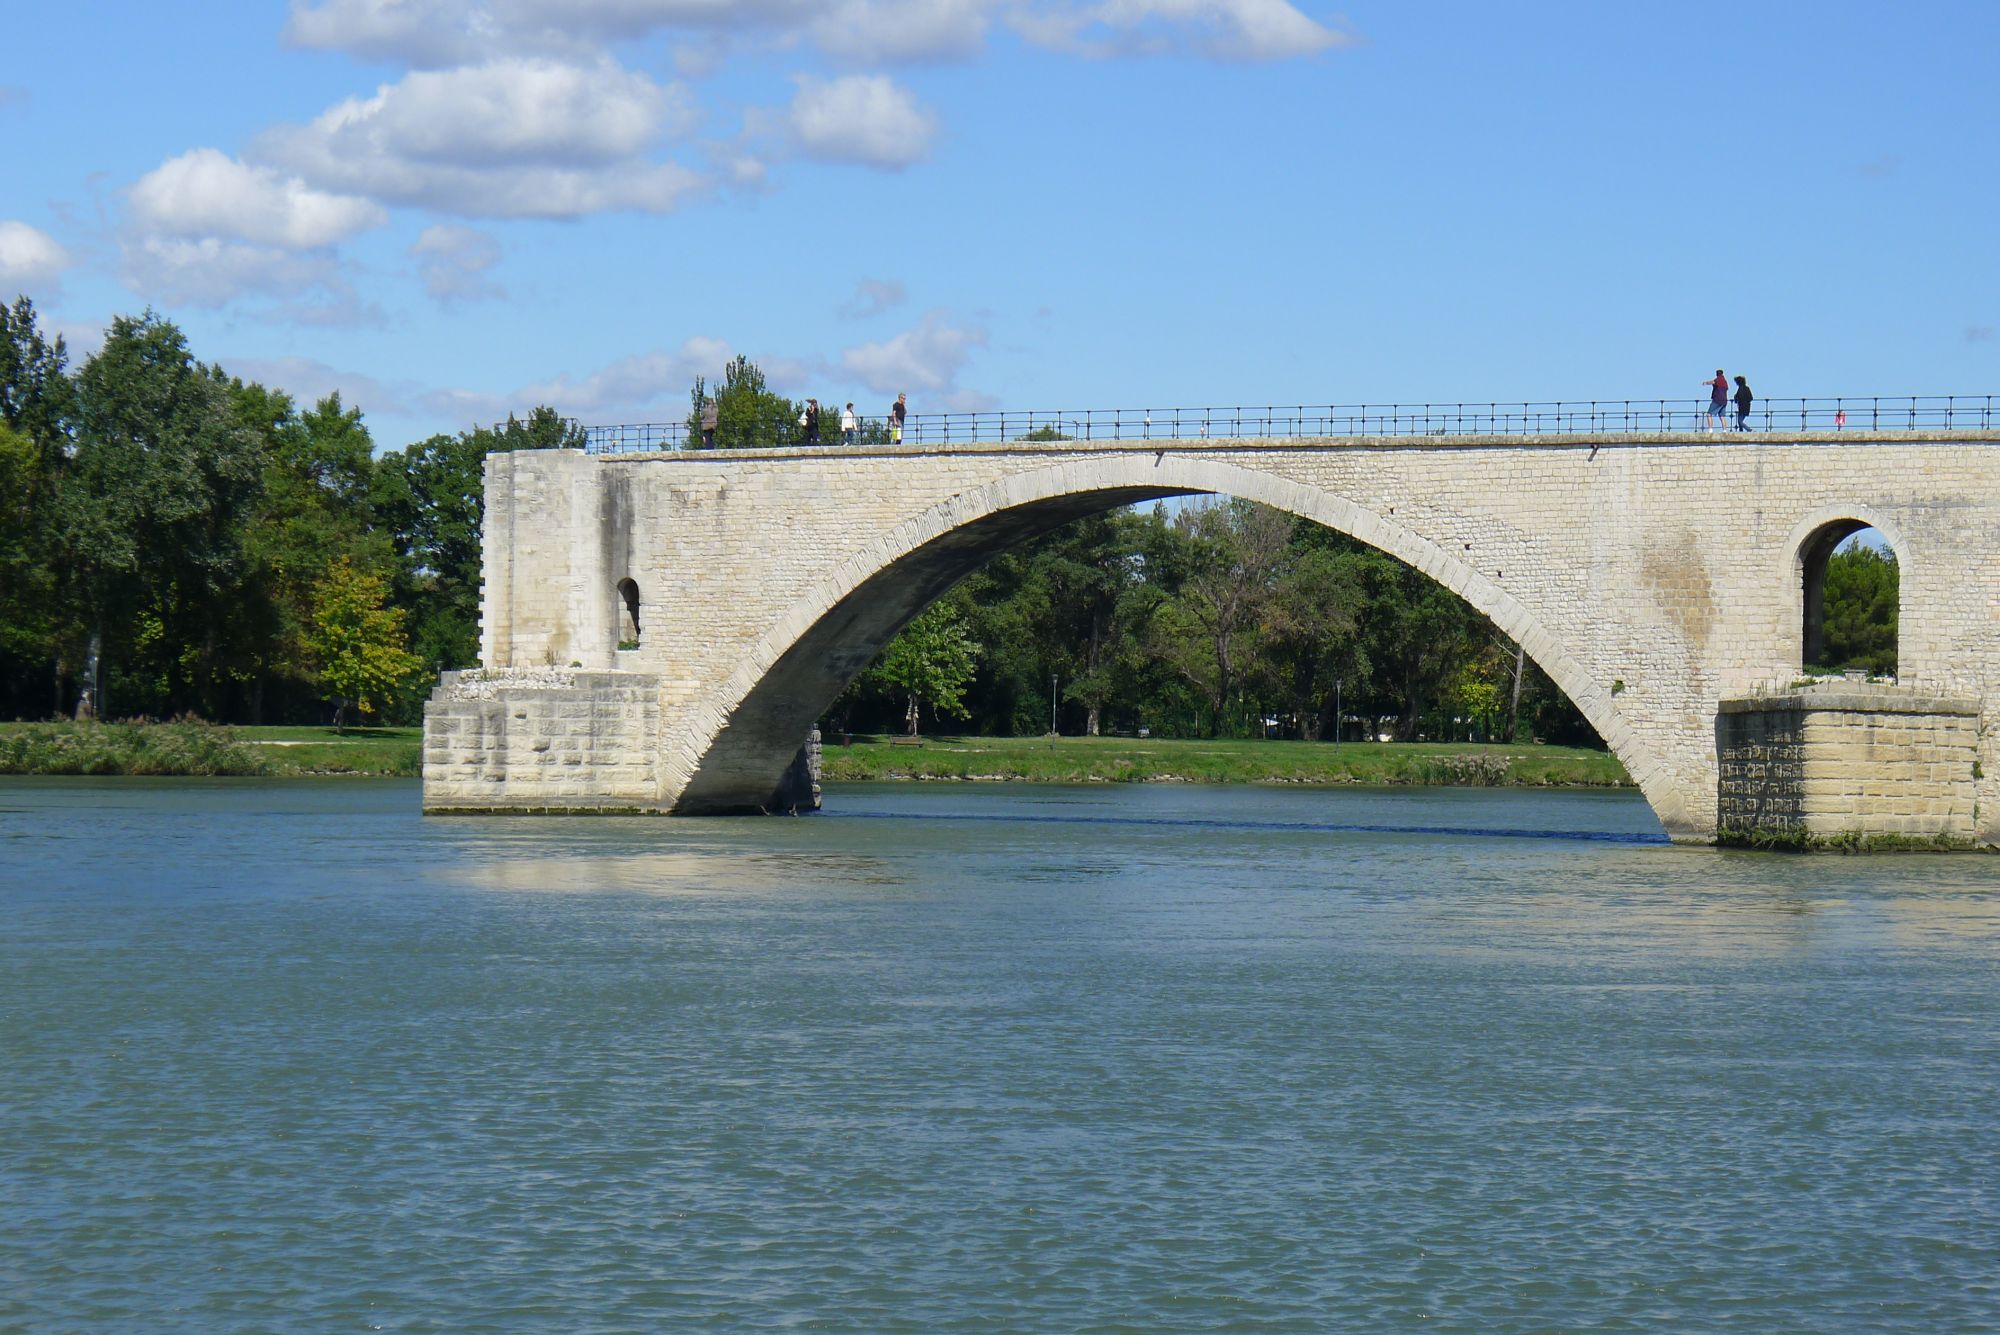 Le pont avait autrefois 22 arches.